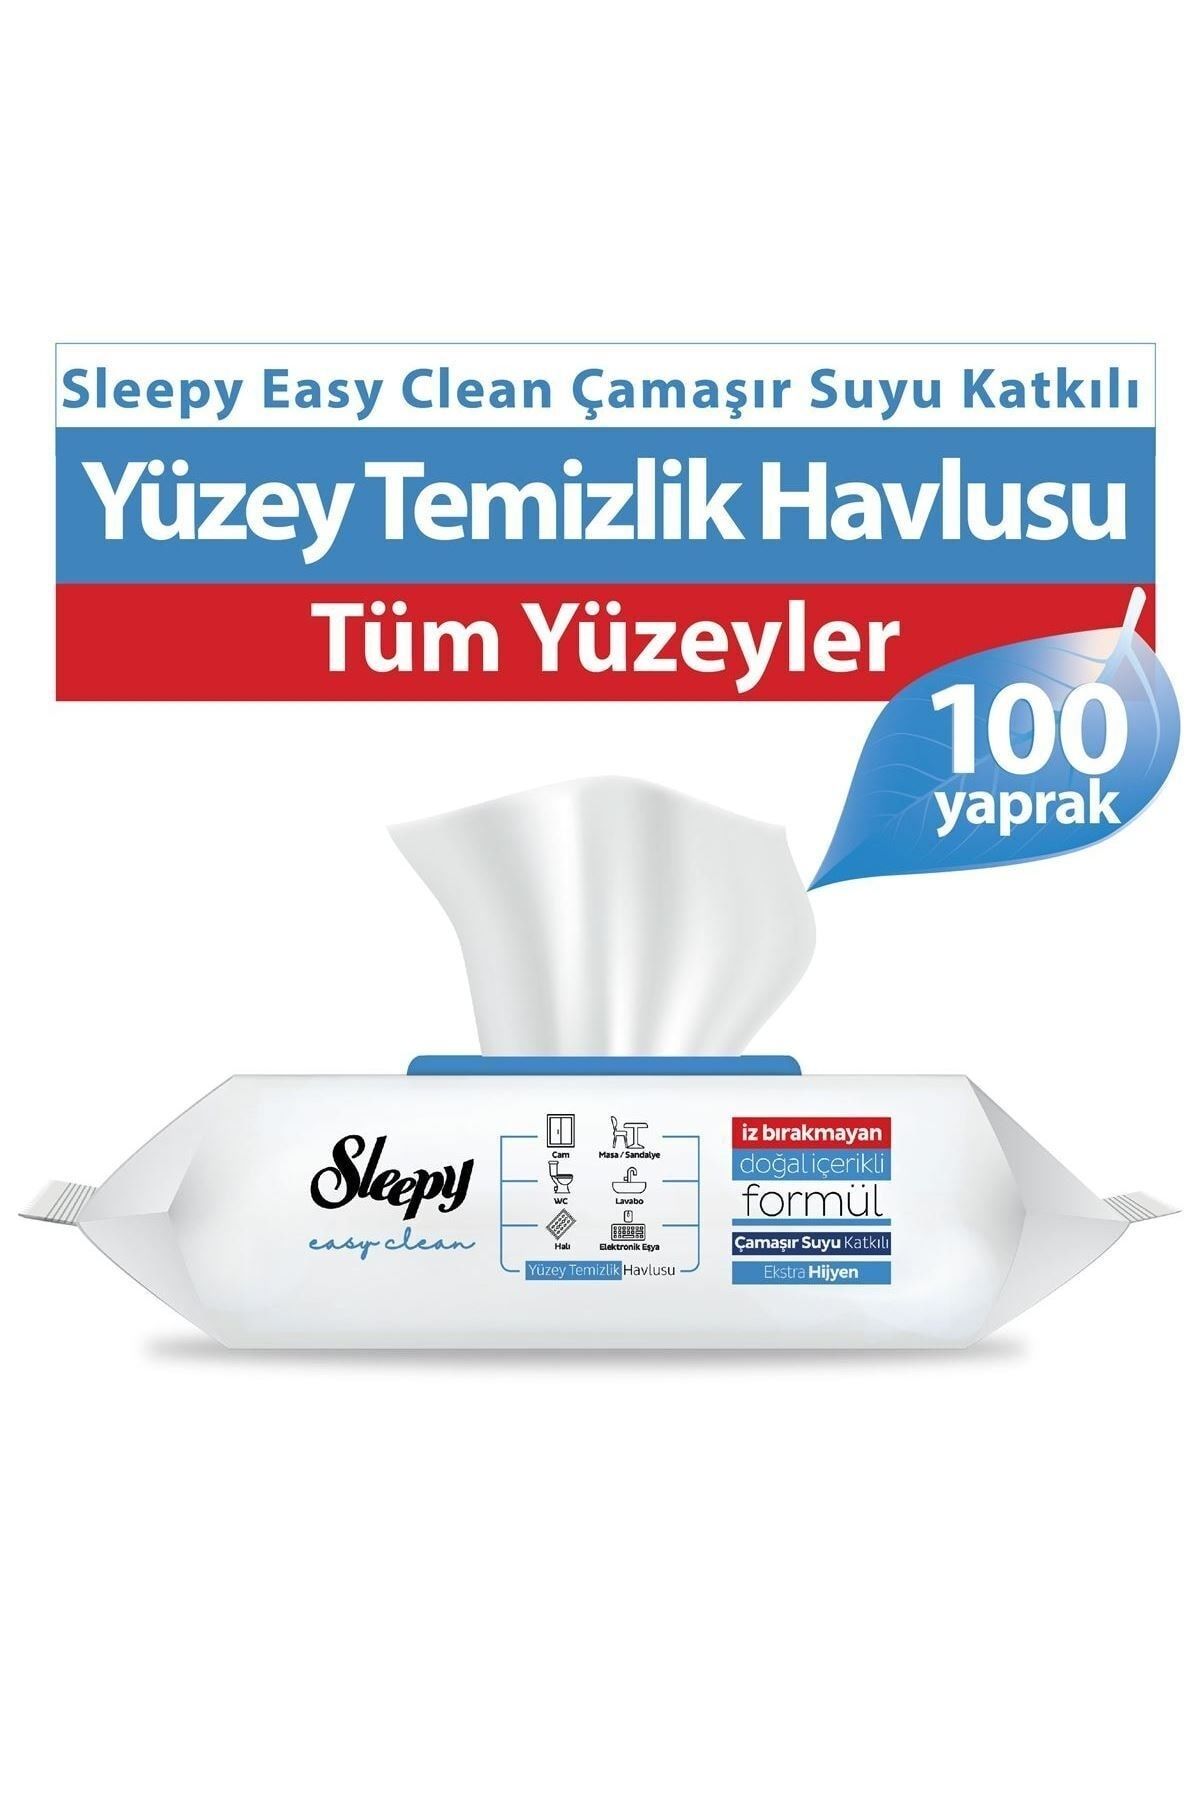 Sleepy Easy Clean Çamaşır Suyu Katkılı Yüzey Temizlik Havlusu 100' lü